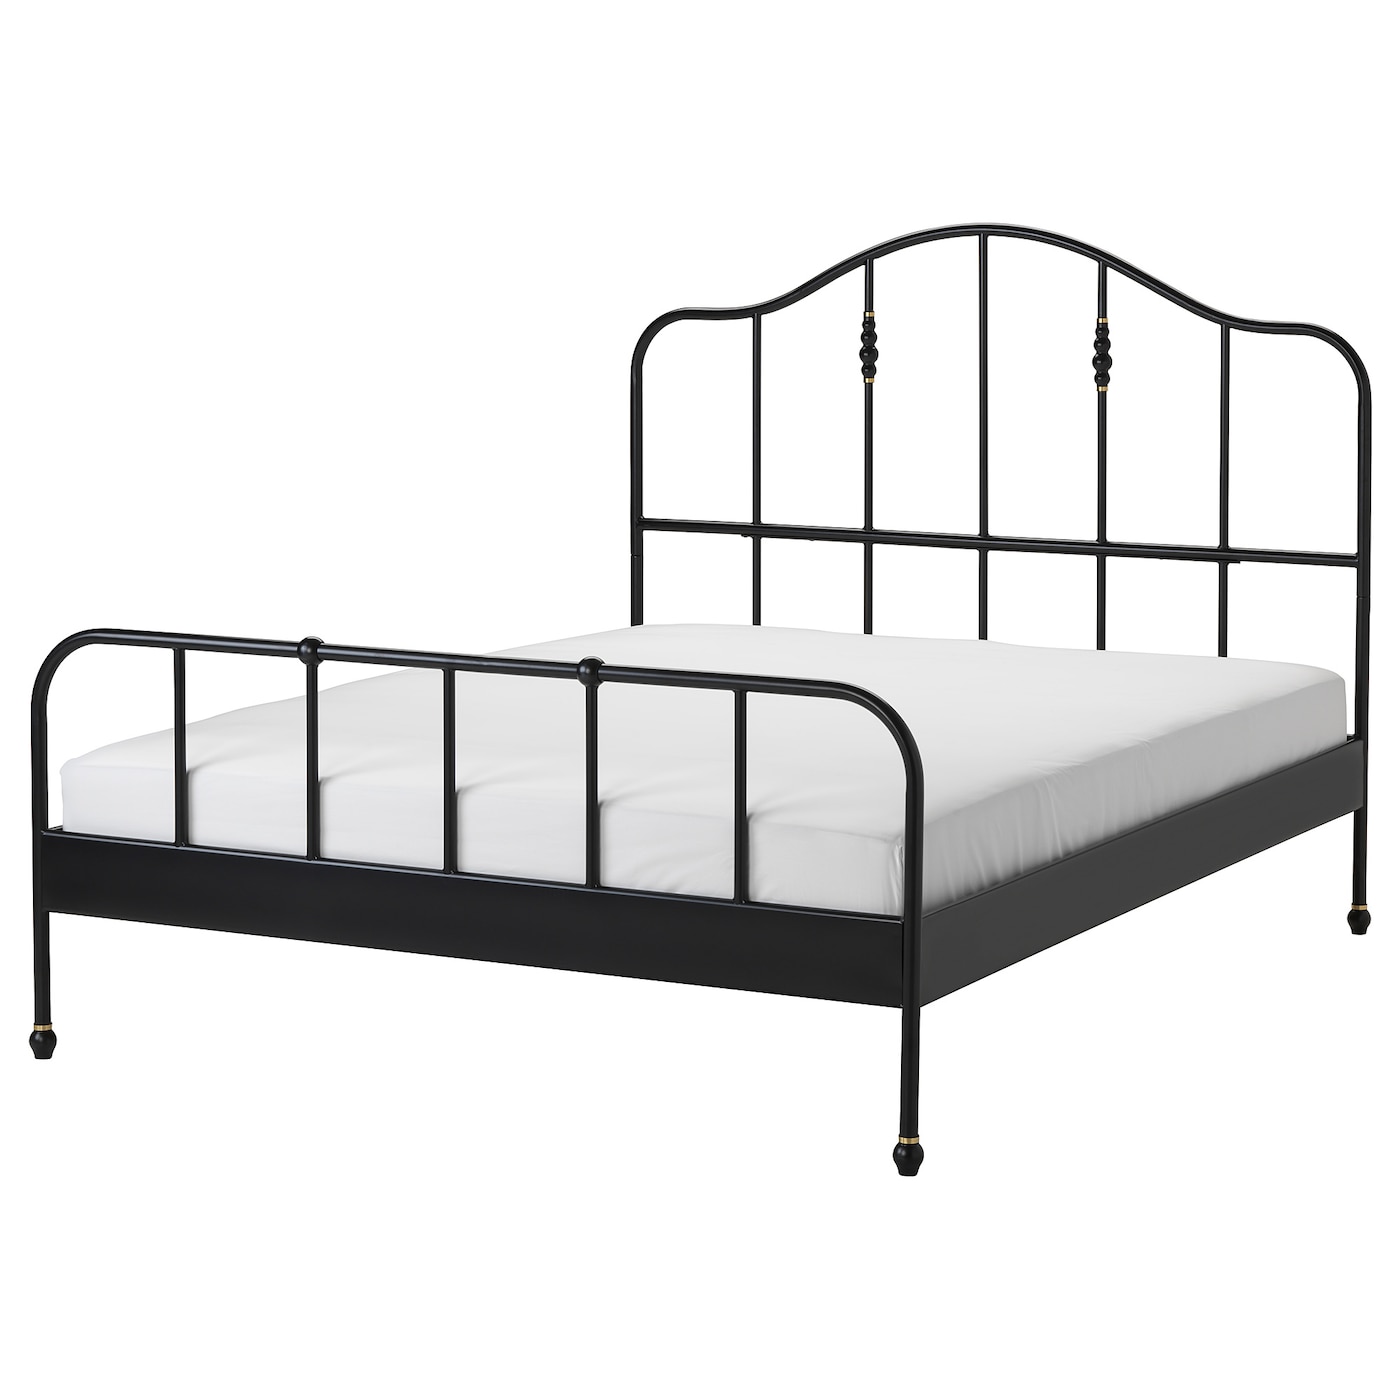 Двуспальная кровать - IKEA SAGSTUA/LURÖY/LUROY, 200х160 см, черный, САГСТУА/ЛУРОЙ ИКЕА